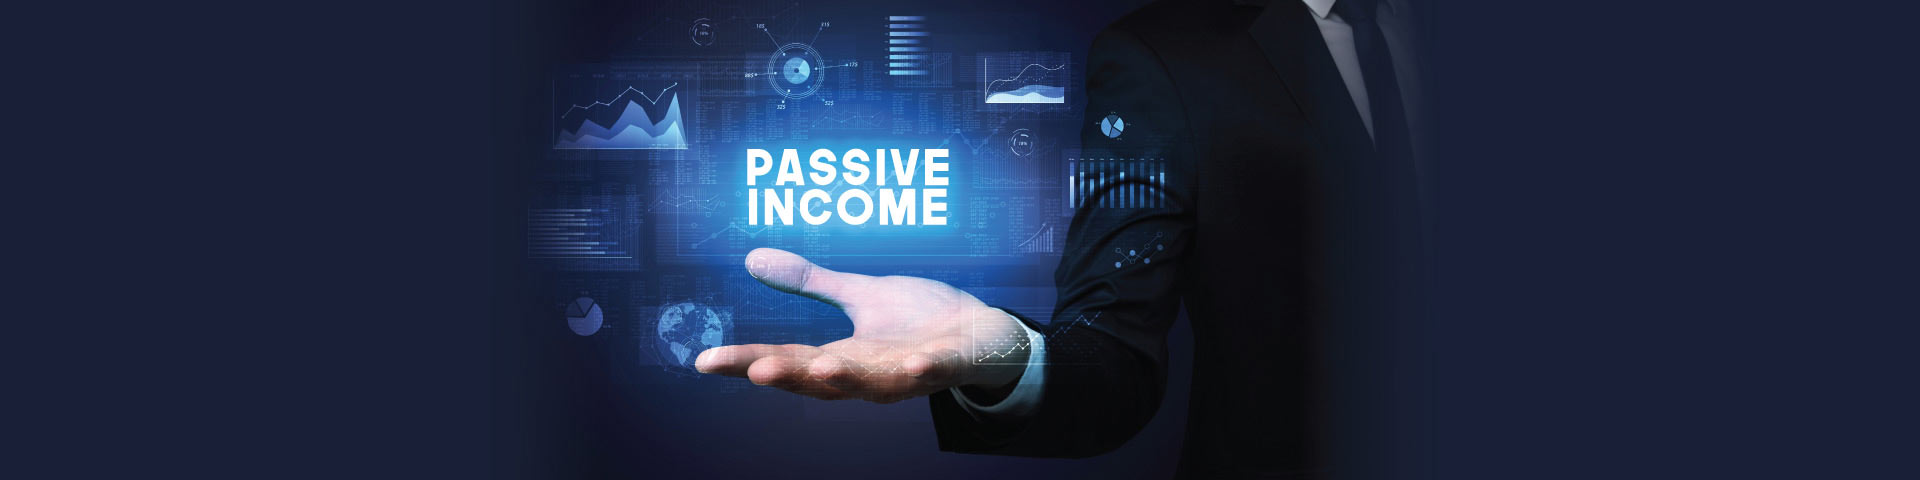 อยากมี Passive Income ควรเริ่มต้นอย่างไร? 